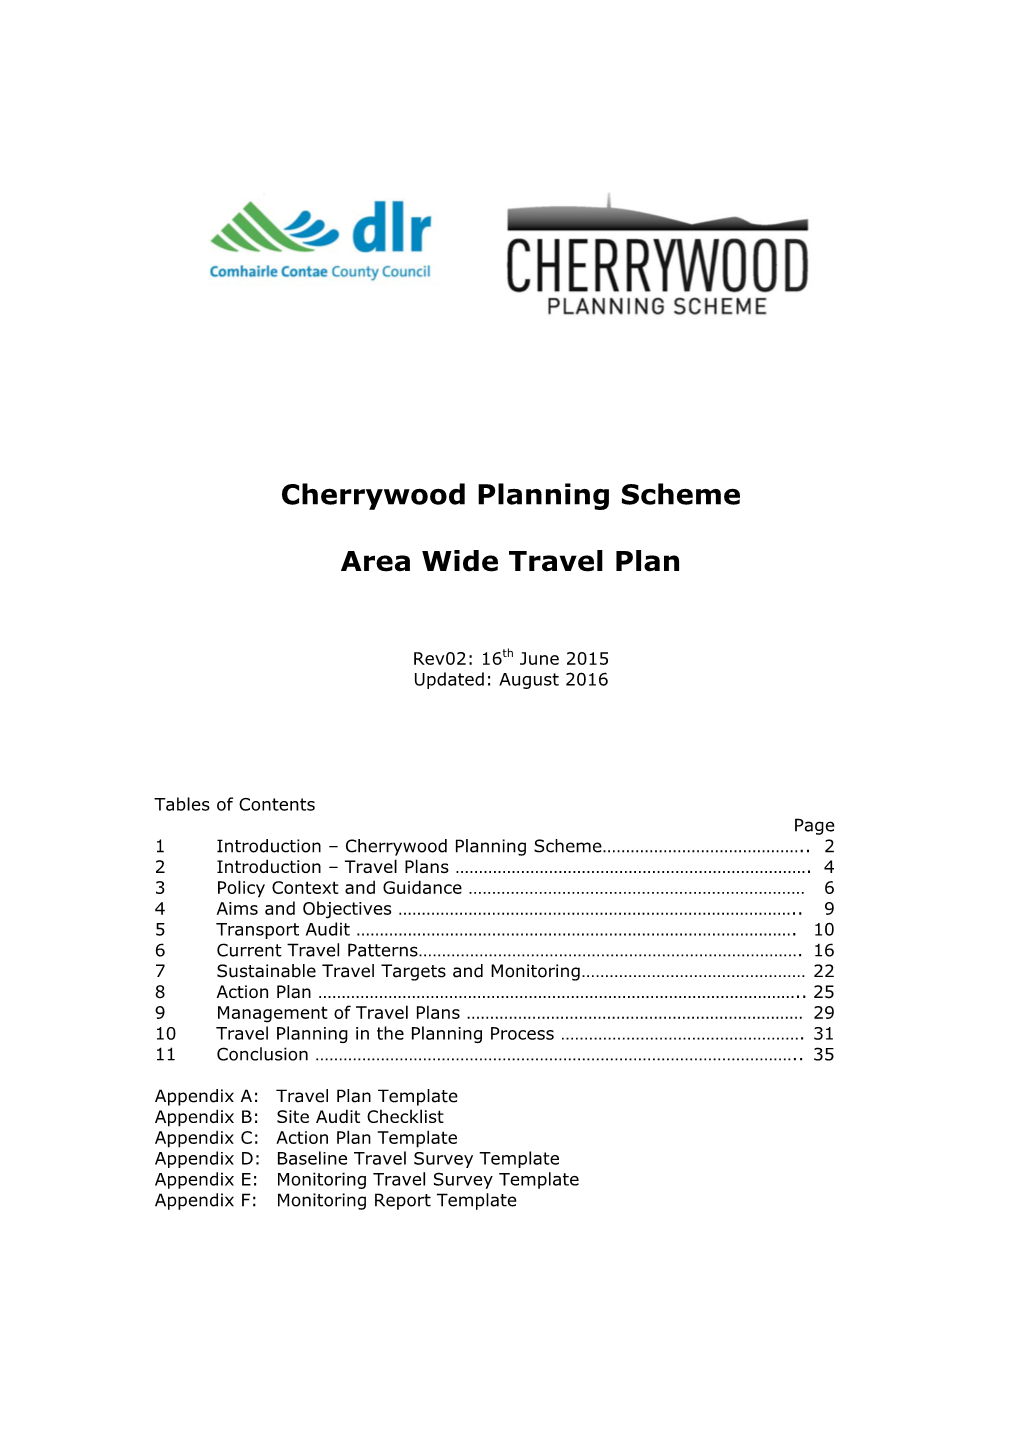 Cherrywood Planning Scheme Area Wide Travel Plan